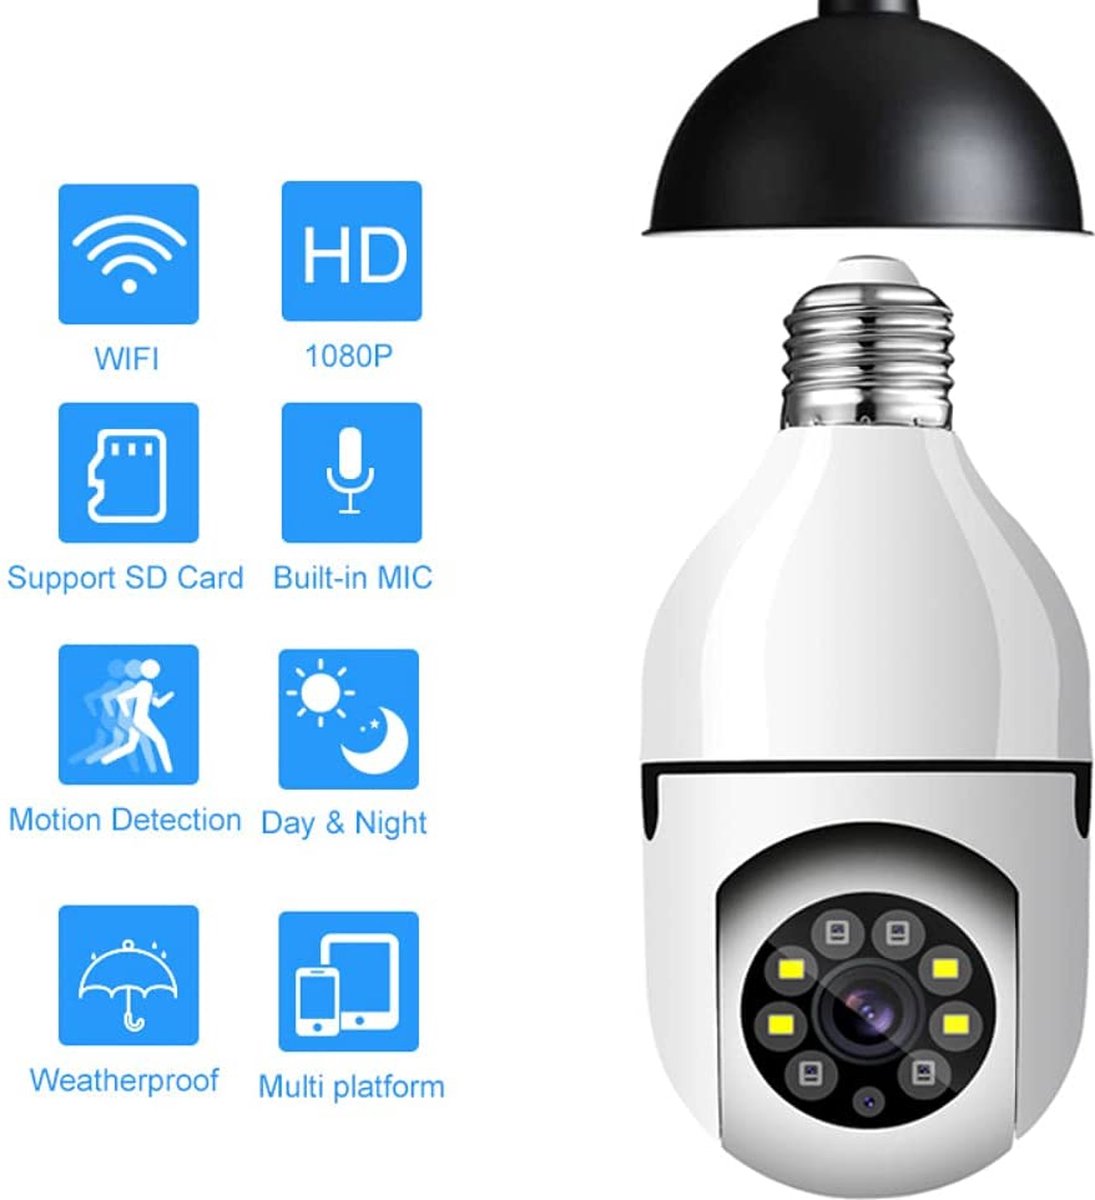 Ampoule caméra de surveillance cachée WIFI HD